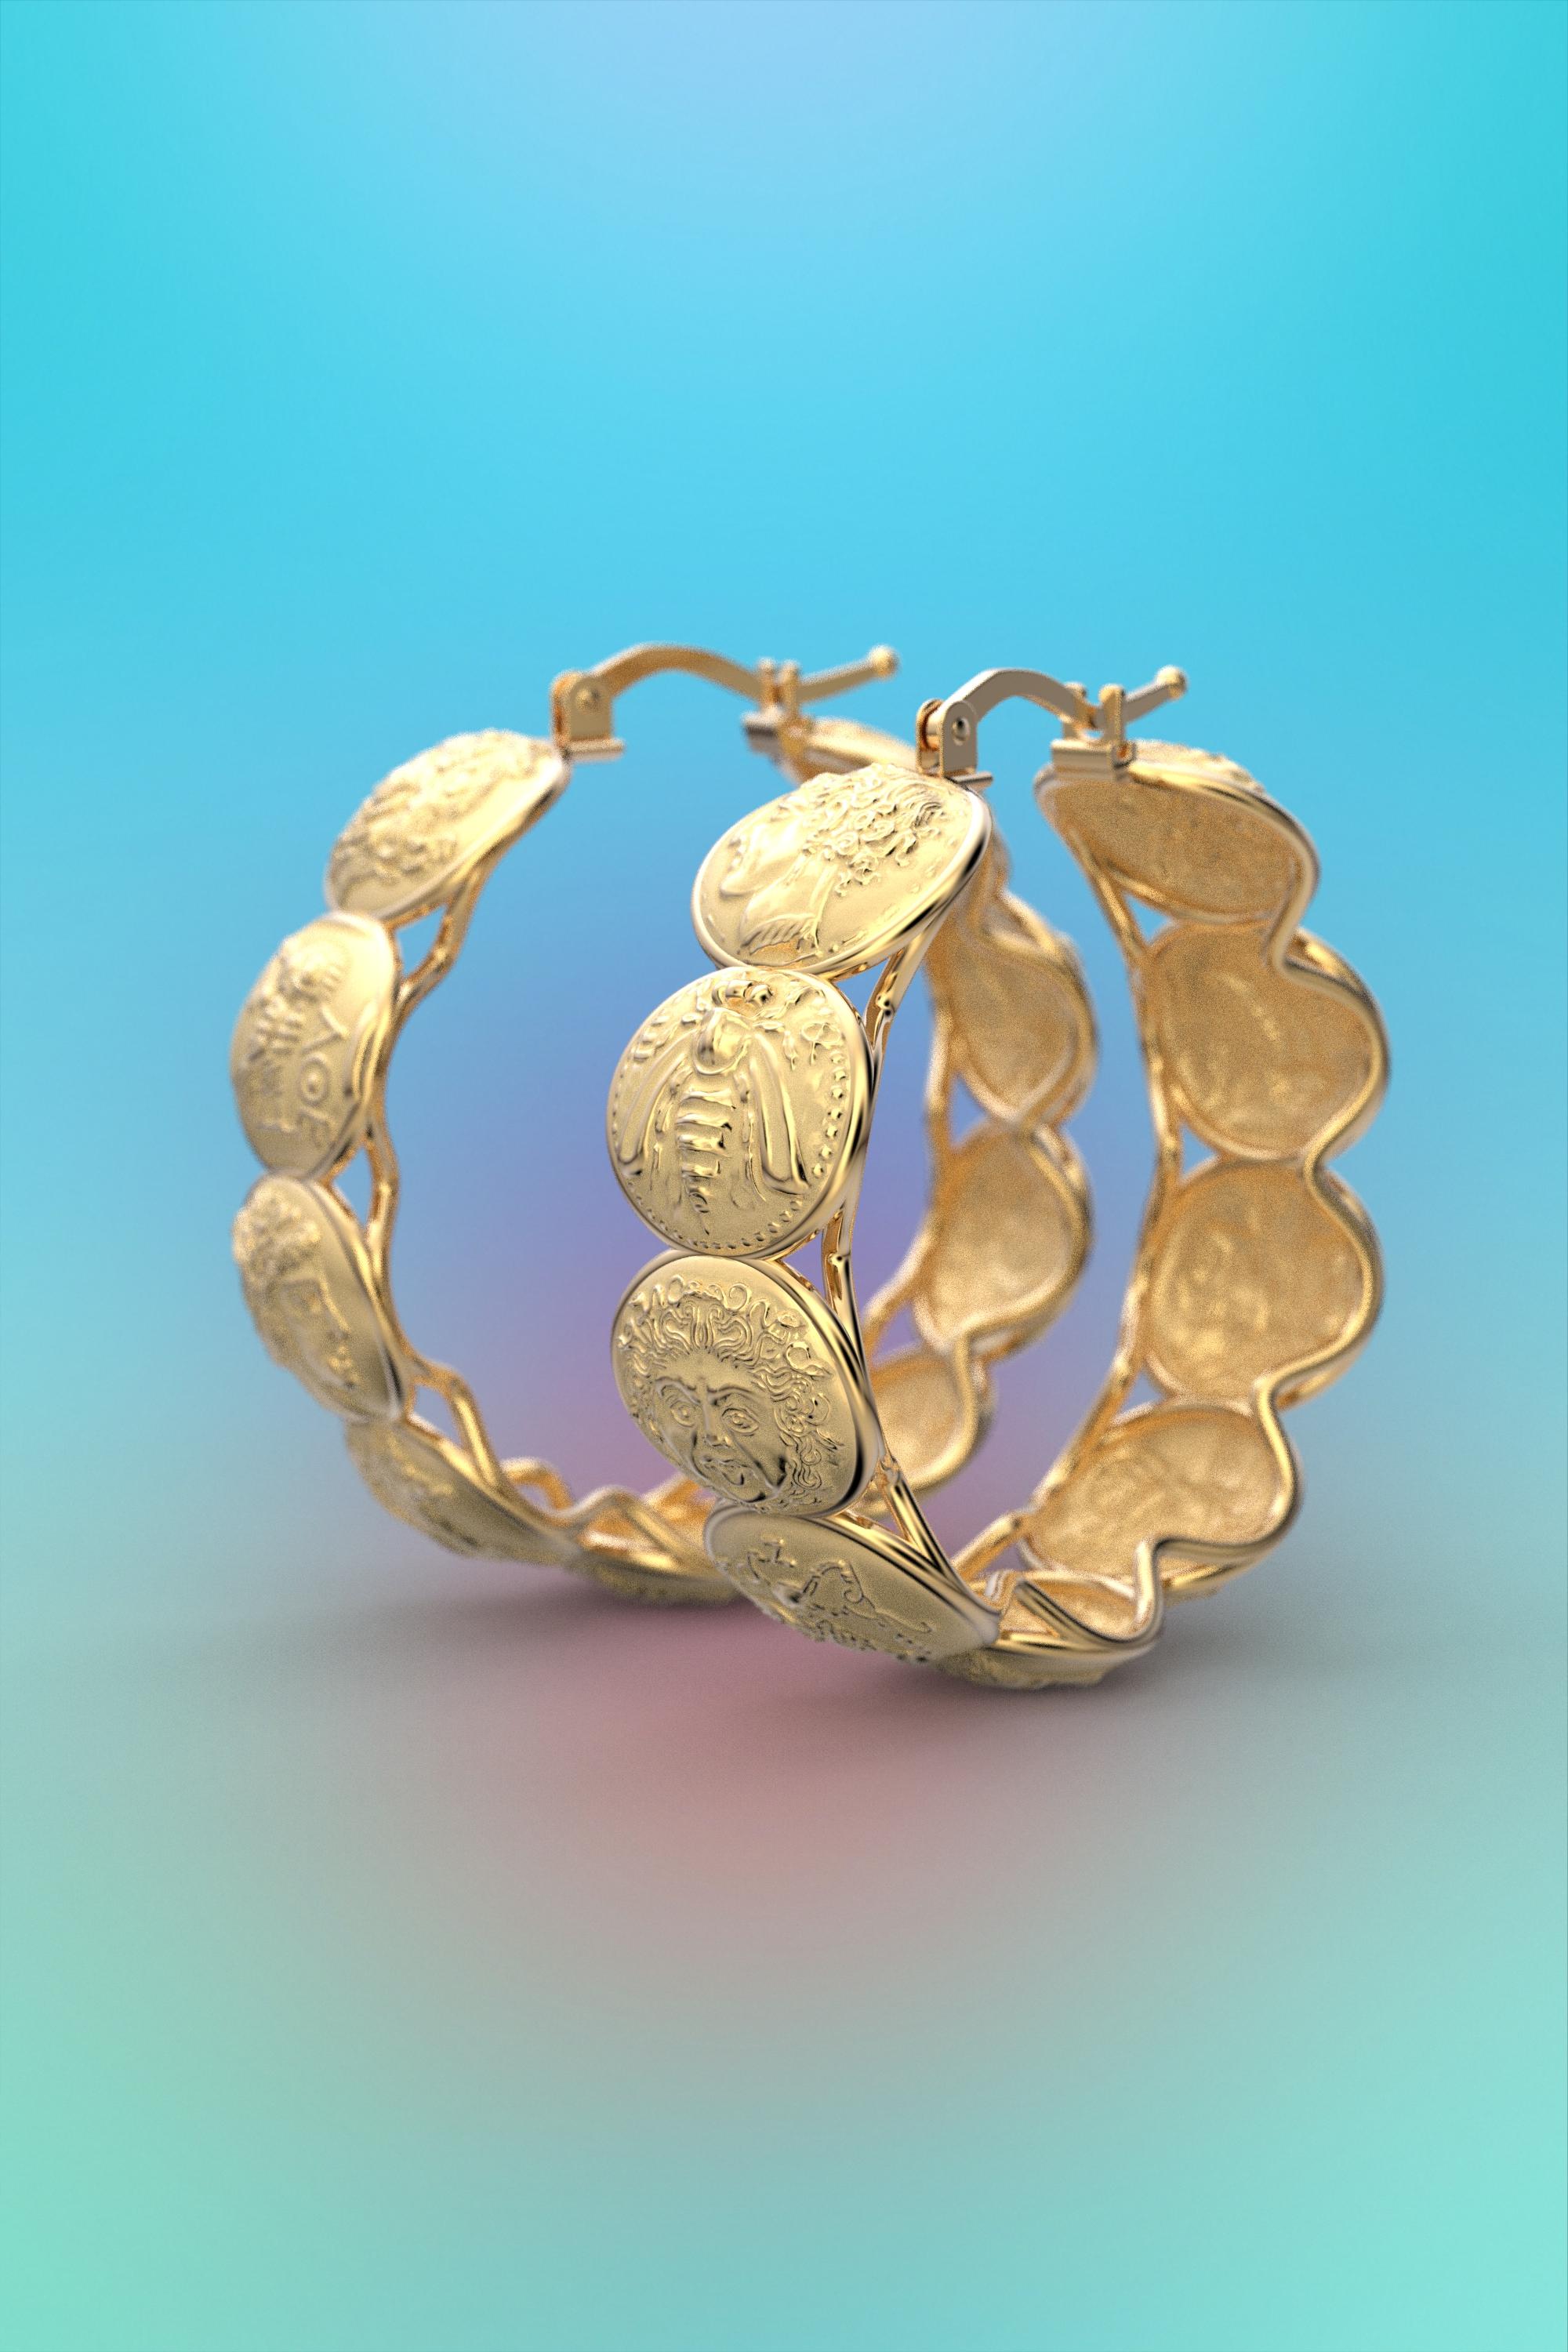 14k gold coin earrings